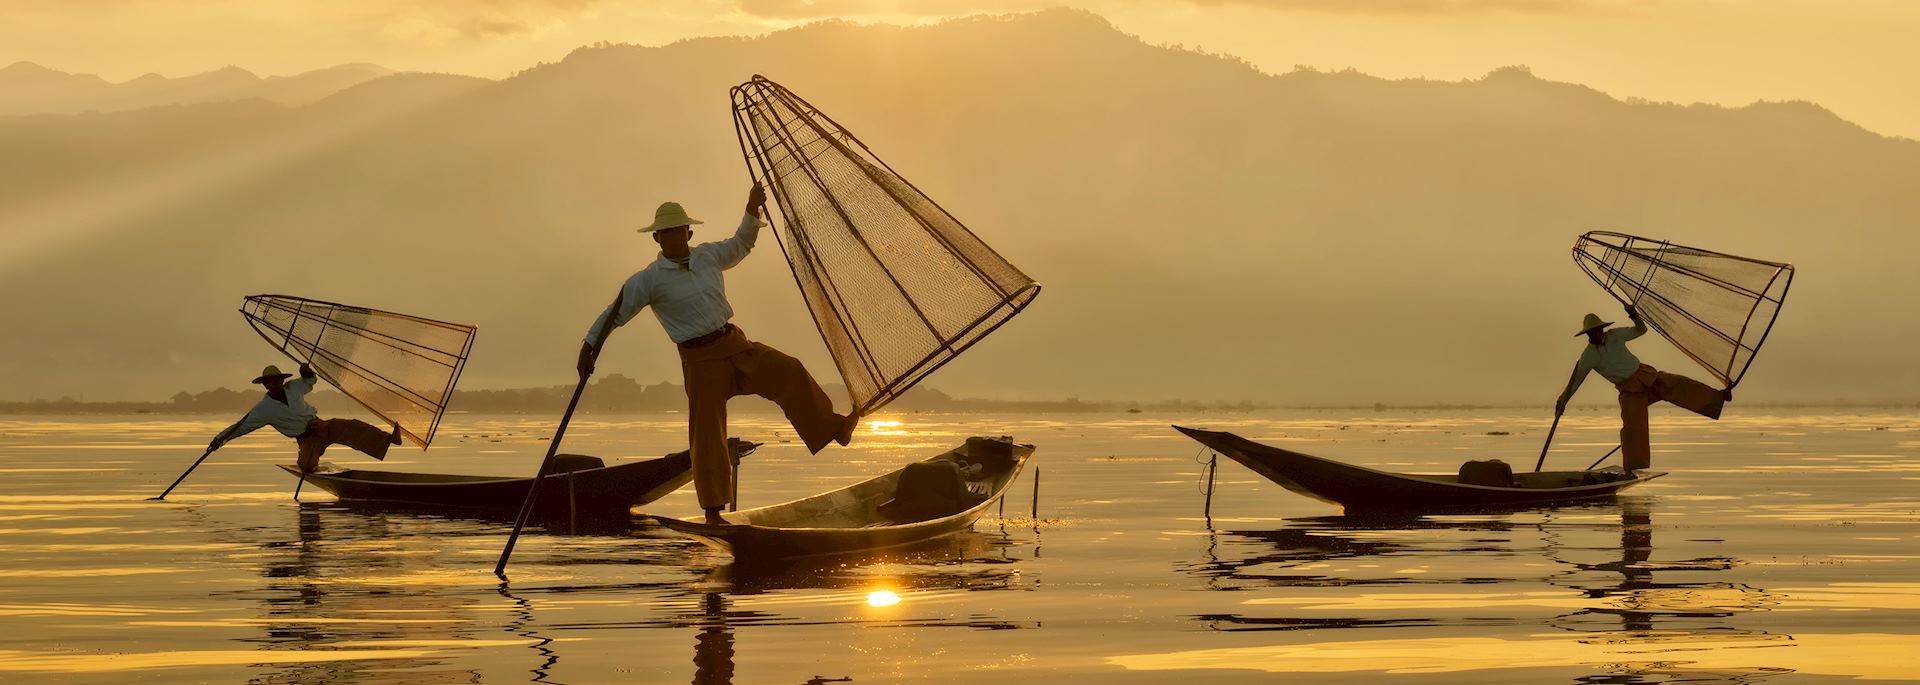 Intha fishermen, Myanmar